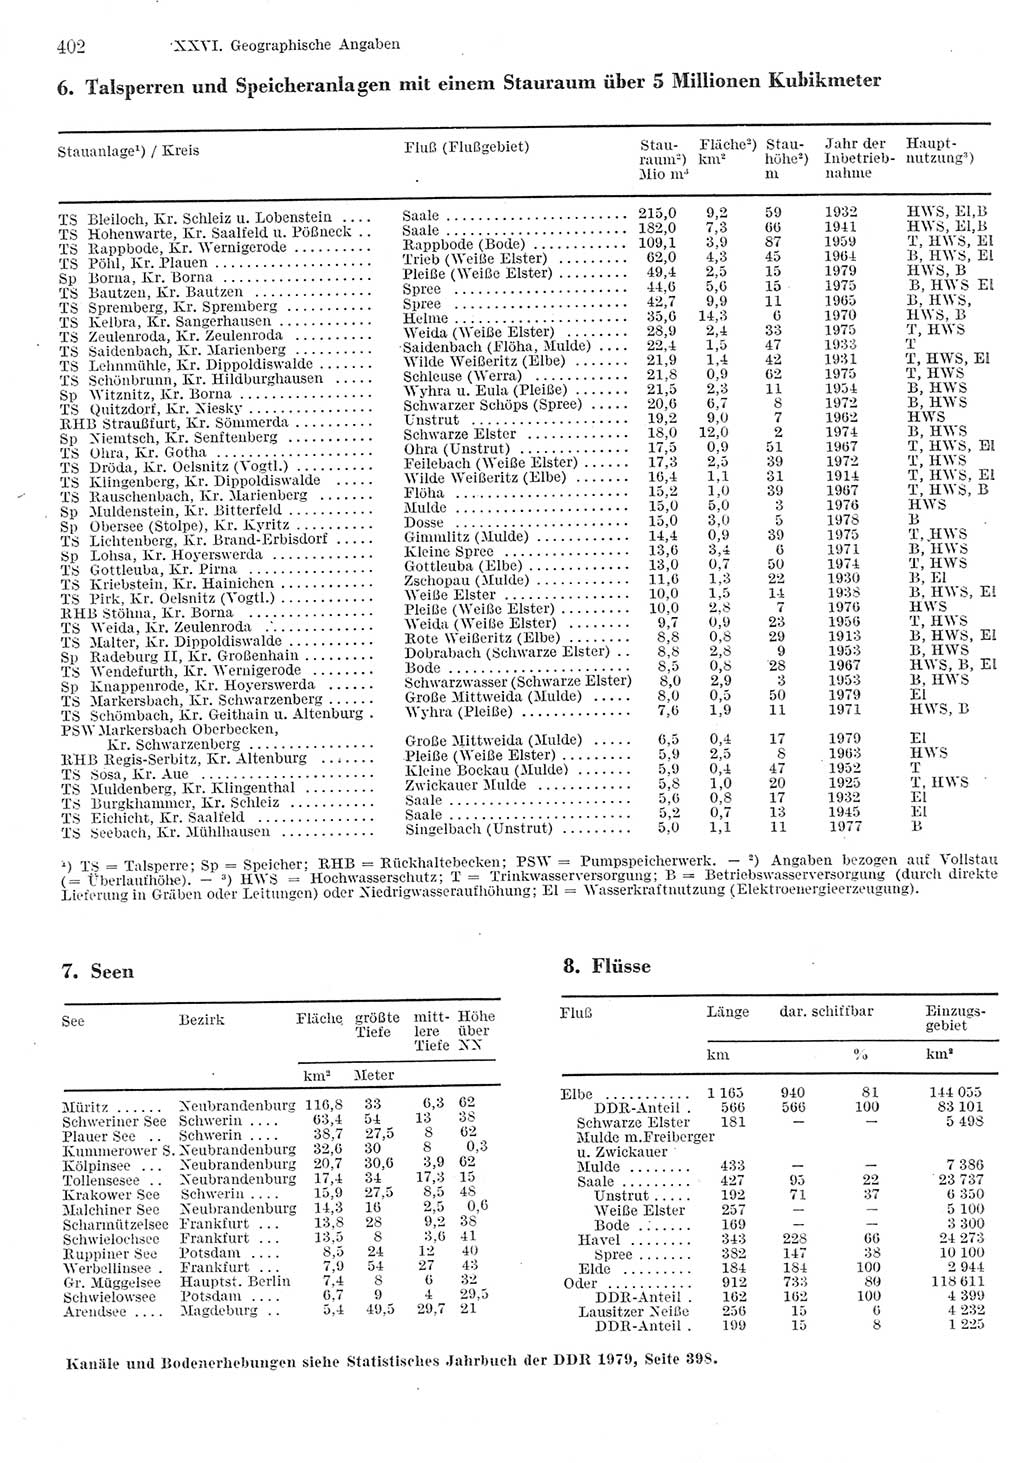 Statistisches Jahrbuch der Deutschen Demokratischen Republik (DDR) 1980, Seite 402 (Stat. Jb. DDR 1980, S. 402)